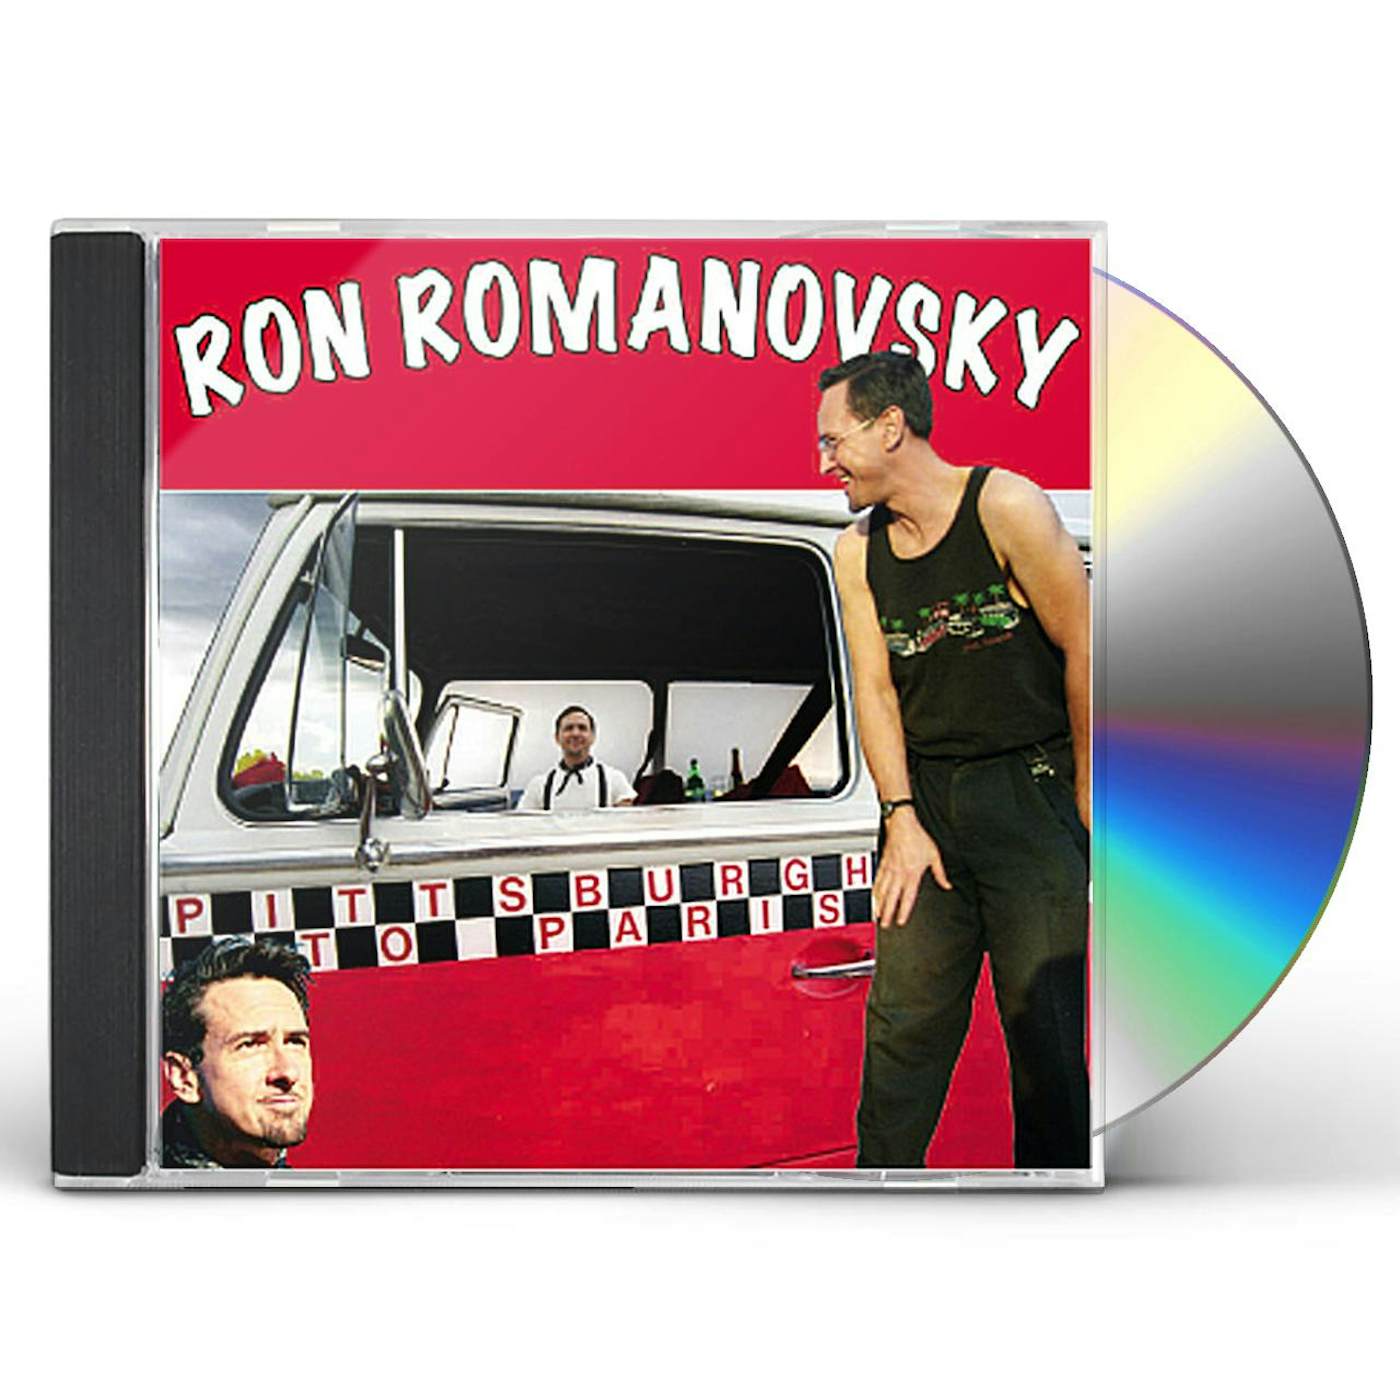 Ron Romanovsky PITTSBURGH TO PARIS CD